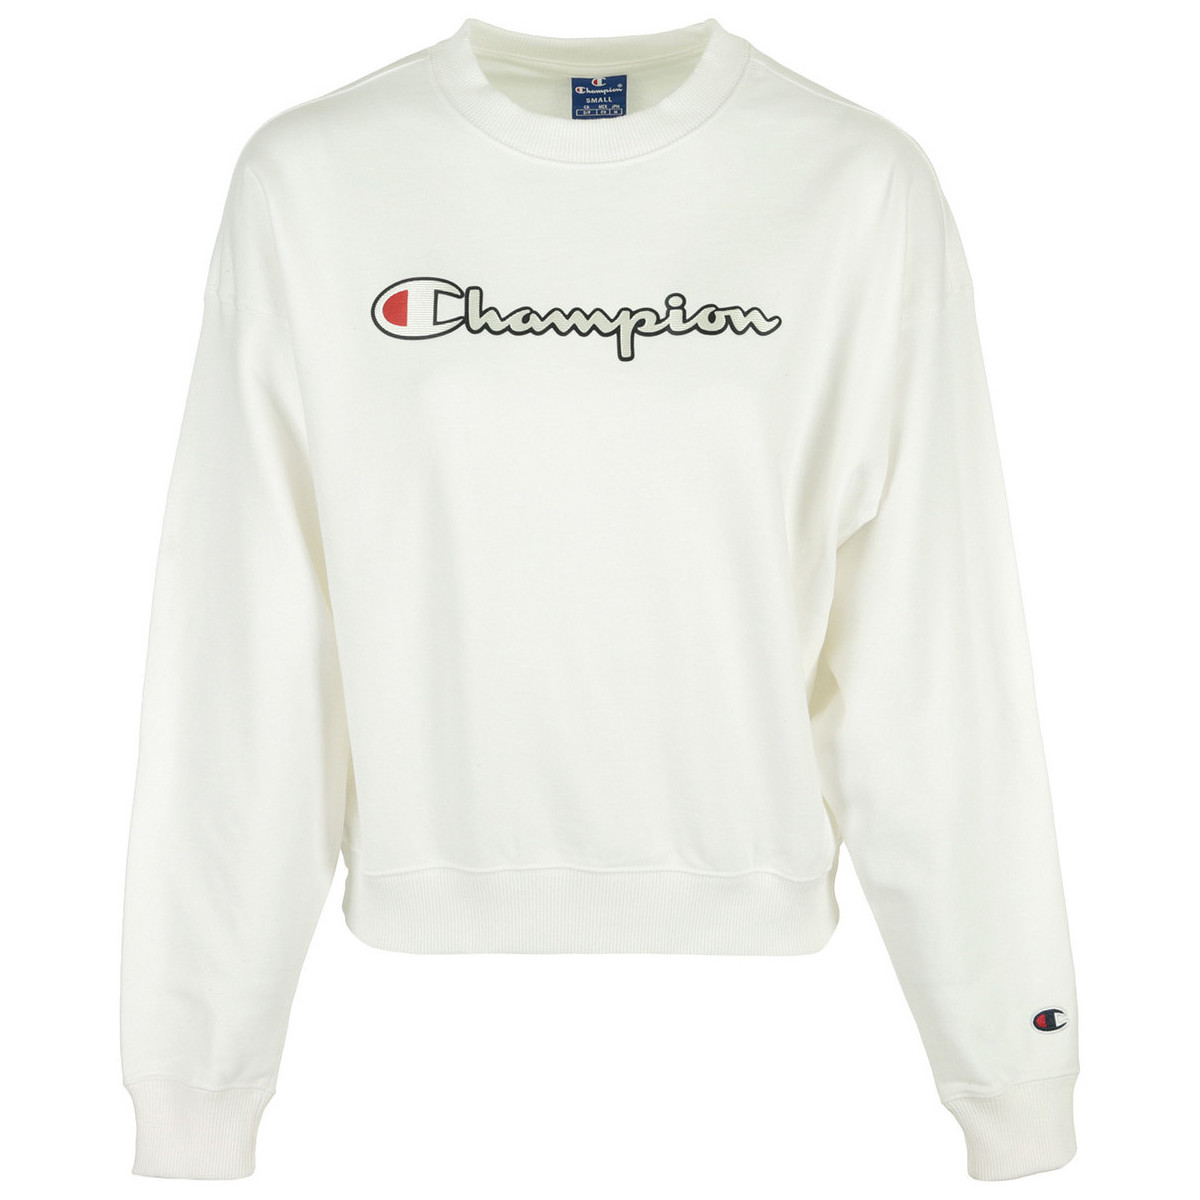 tekstylia Damskie Bluzy Champion Crewneck Sweatshirt Biały